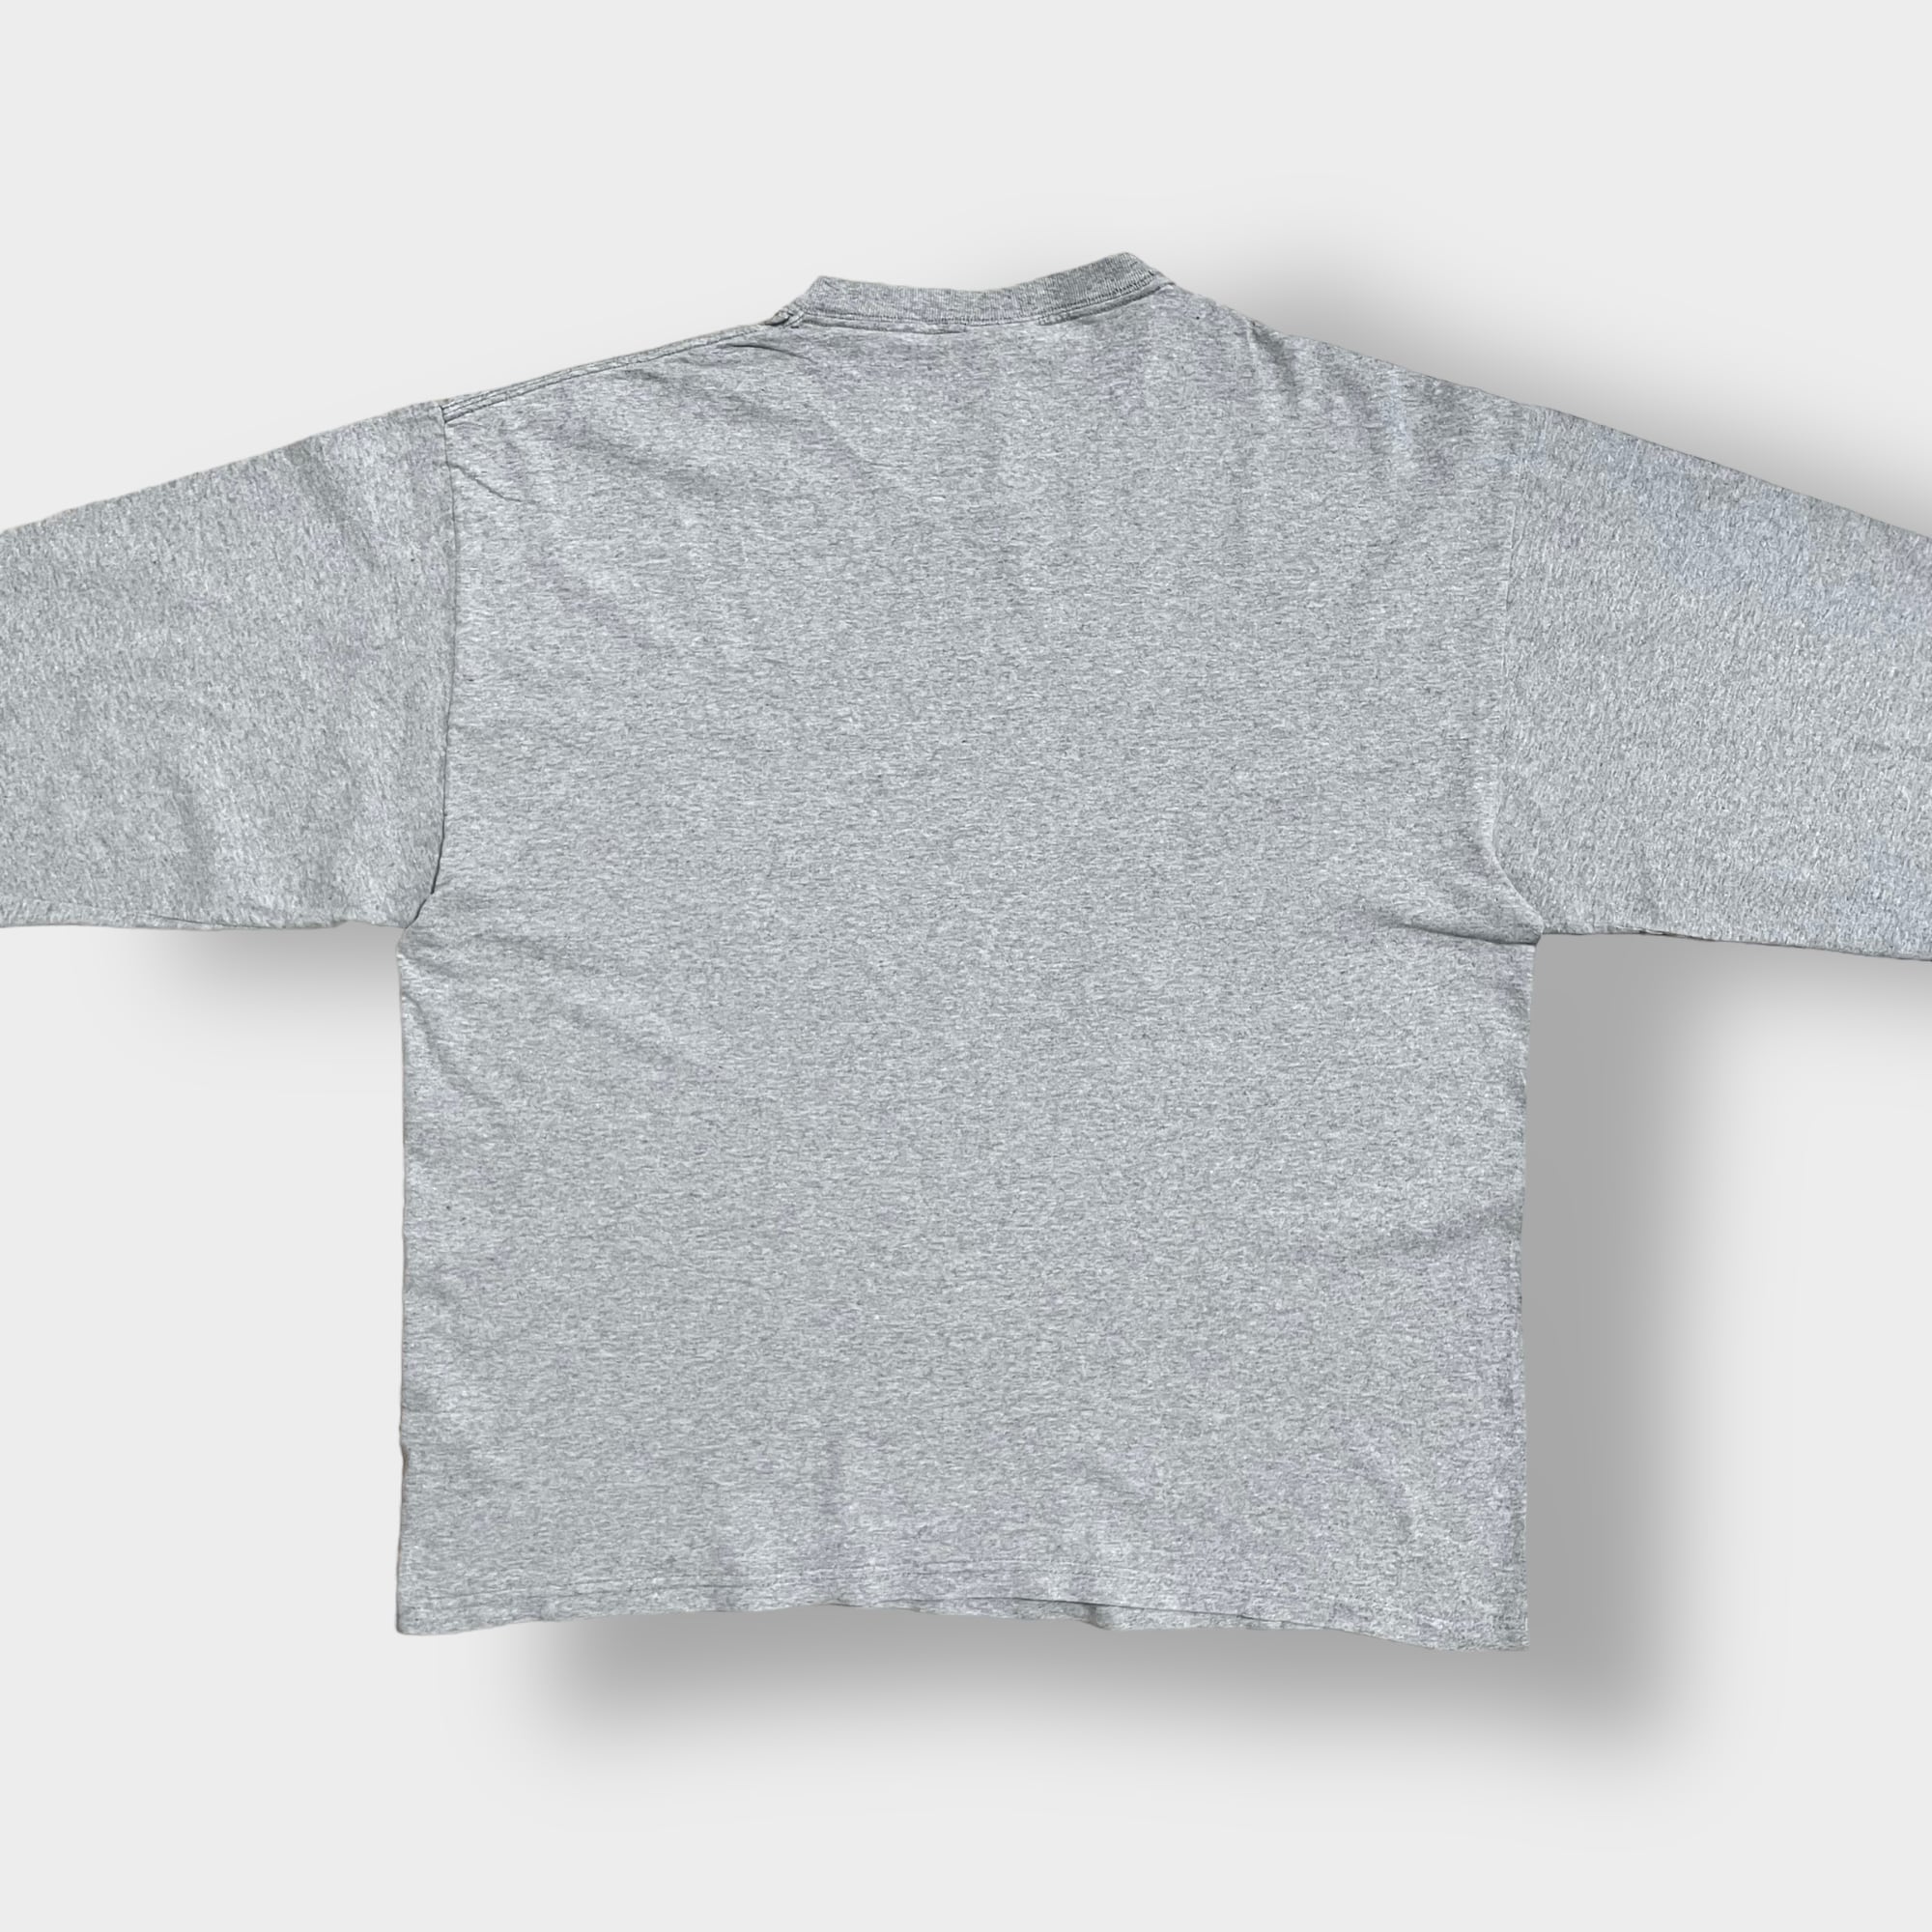 ビンテージ シンプル イラスト シャツ柄 ホワイト ビックサイズ Tシャツ